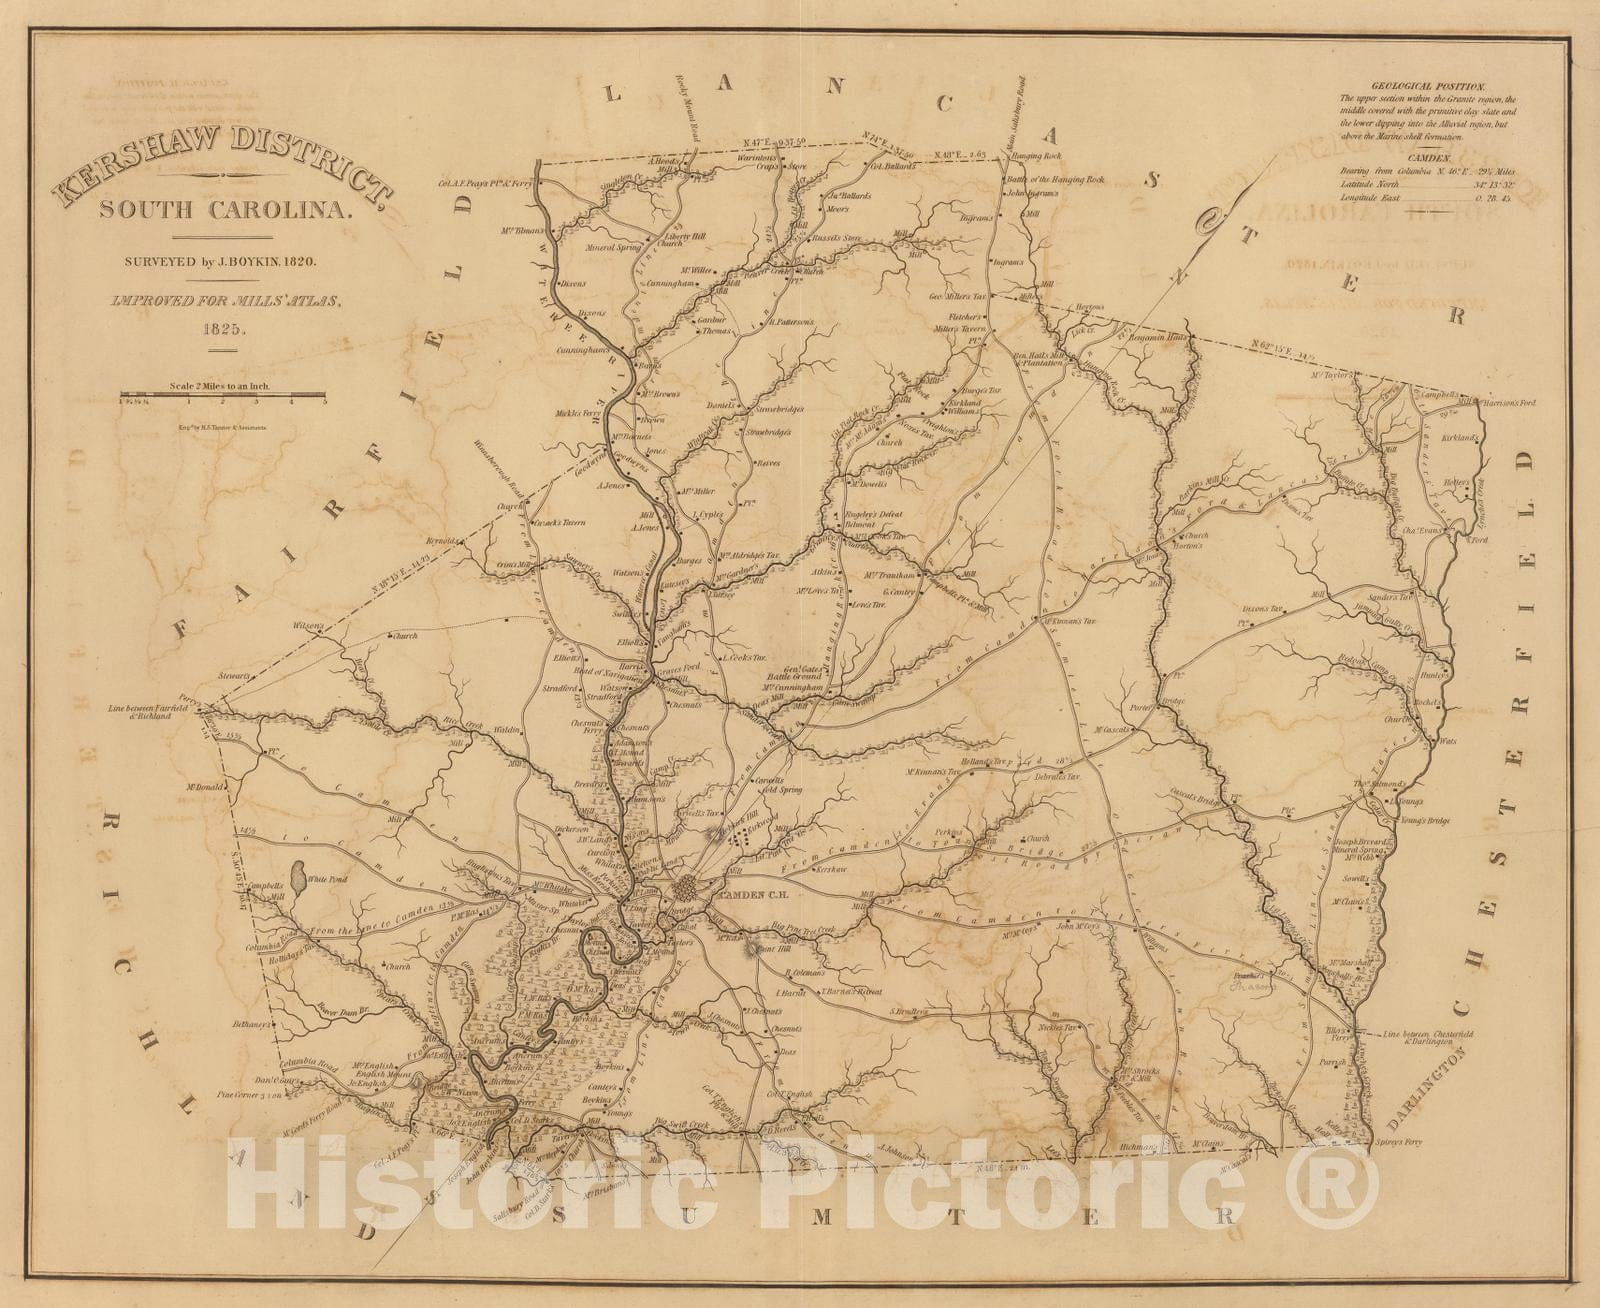 Historic Wall Map : 1825 Kershaw District, South Carolina. - Vintage Wall Art